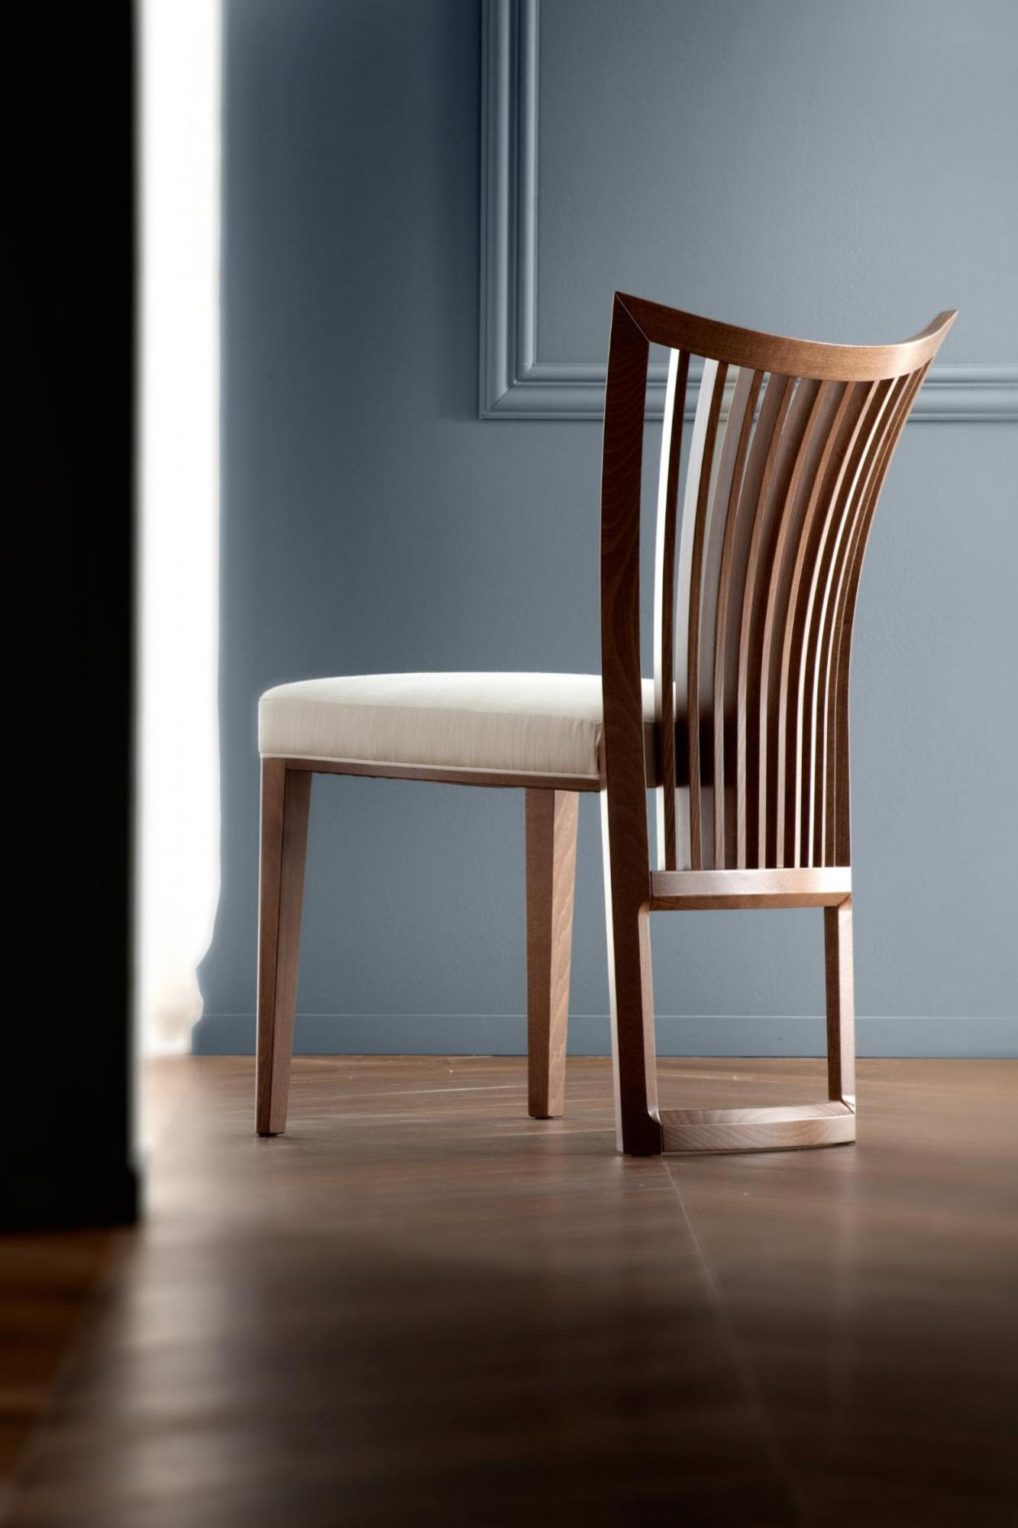 意大利家具costantinipietro的chairs-ALLUSION 餐椅 主图